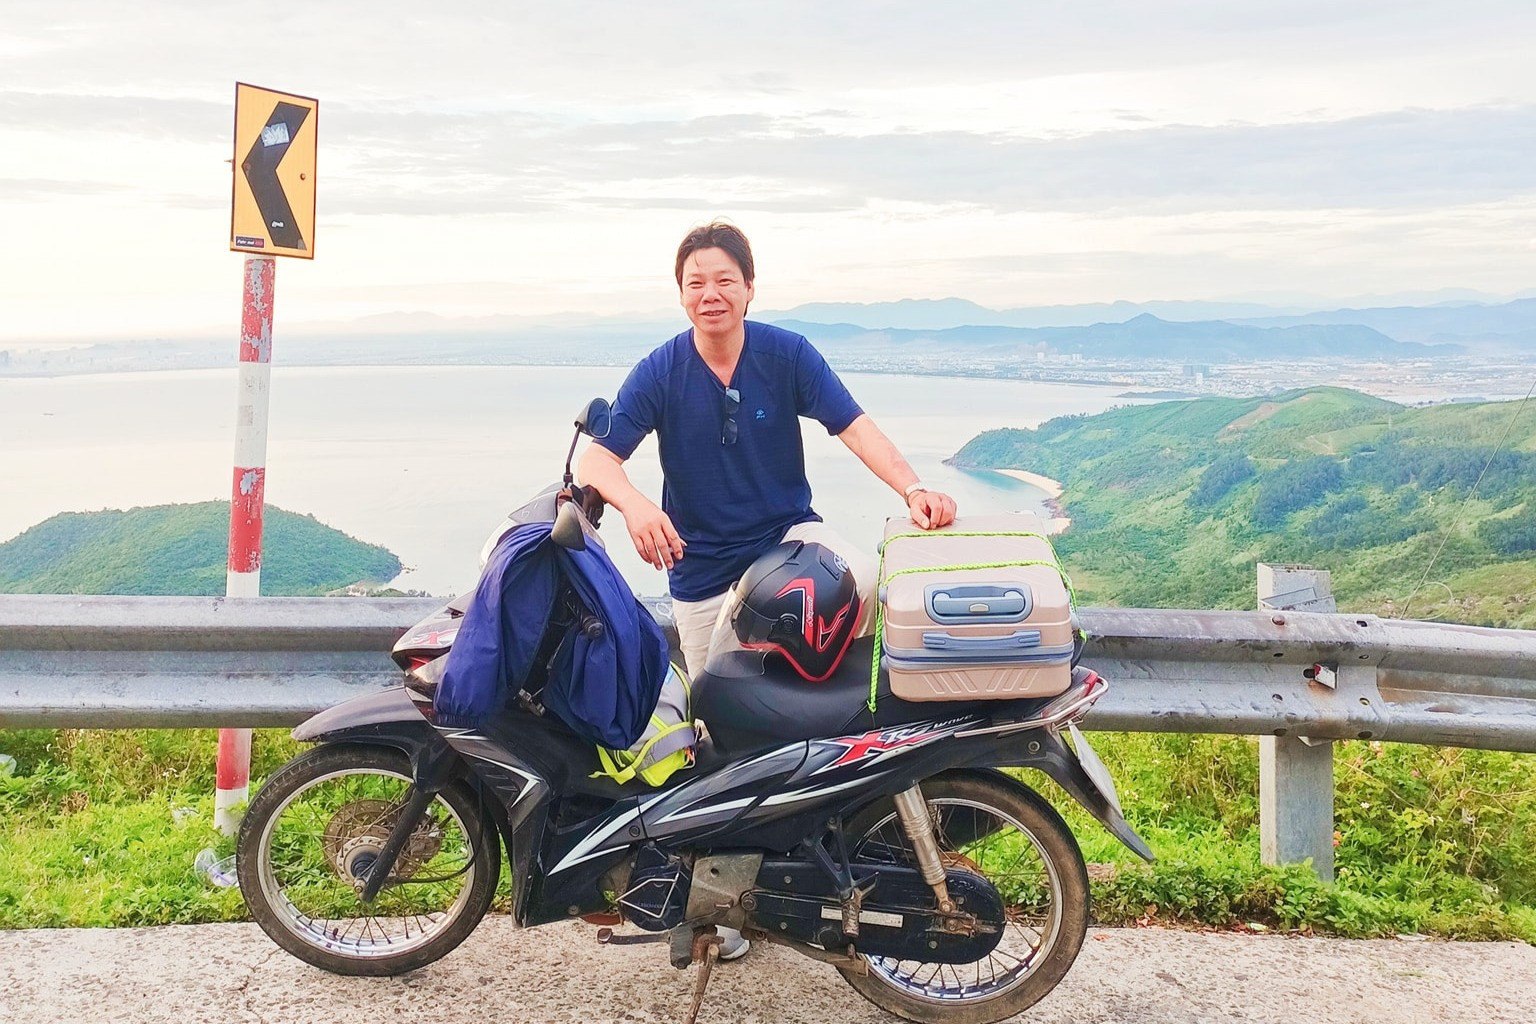 Đi xe máy xuyên Việt, thầy giáo 52 tuổi kể lúc chặn đầu ô tô trên 'đèo gió hú'